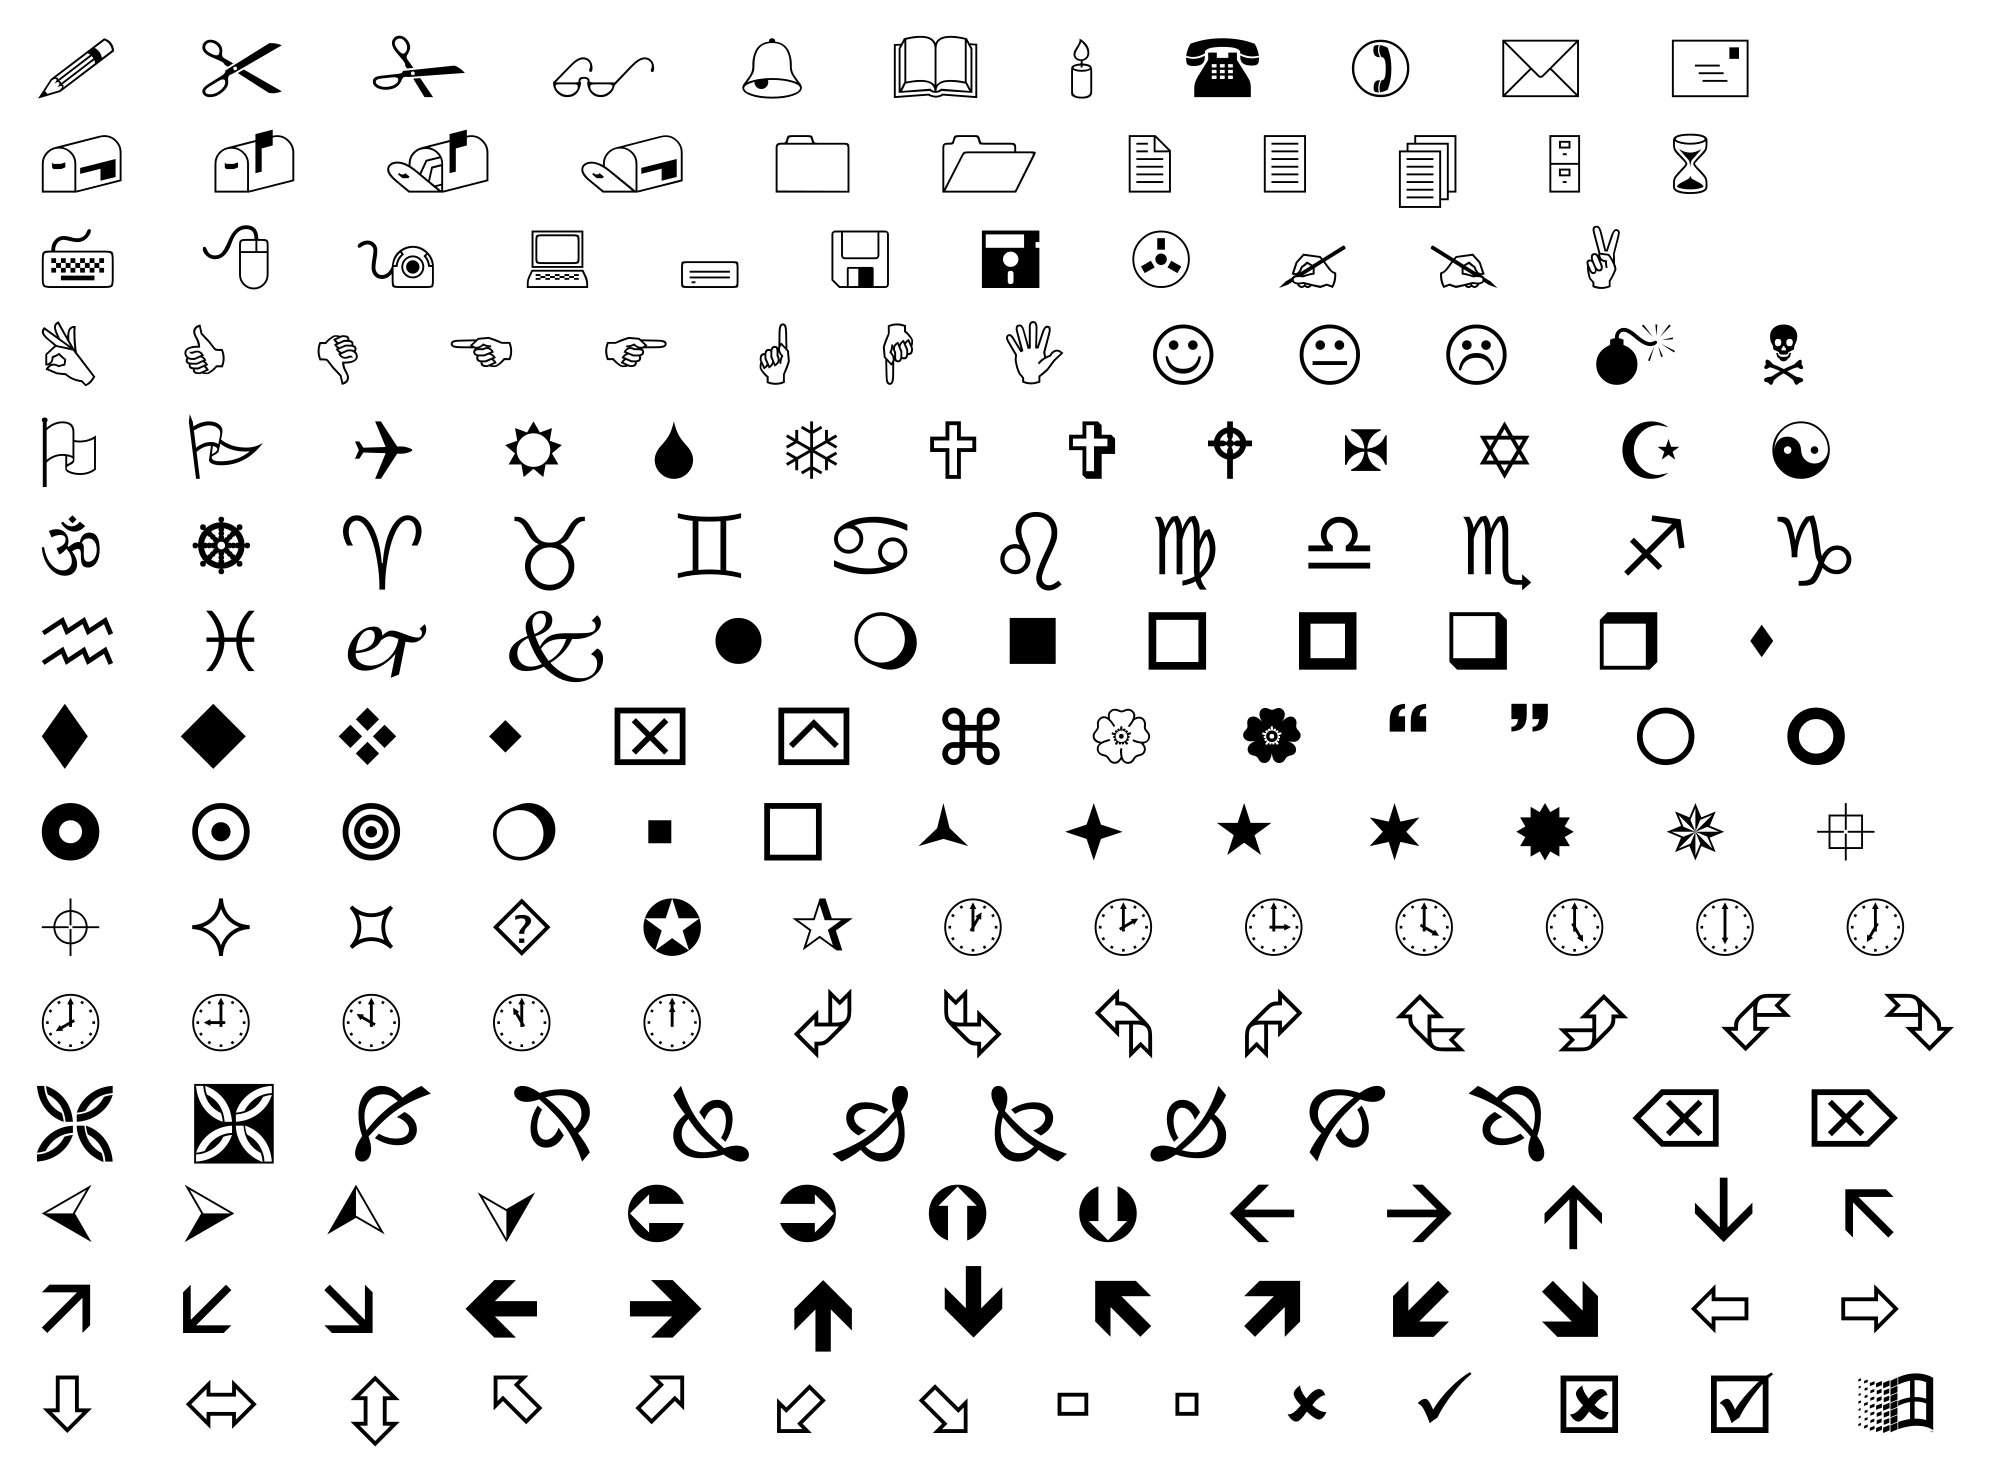 символы и шрифты для ников пабг (120) фото